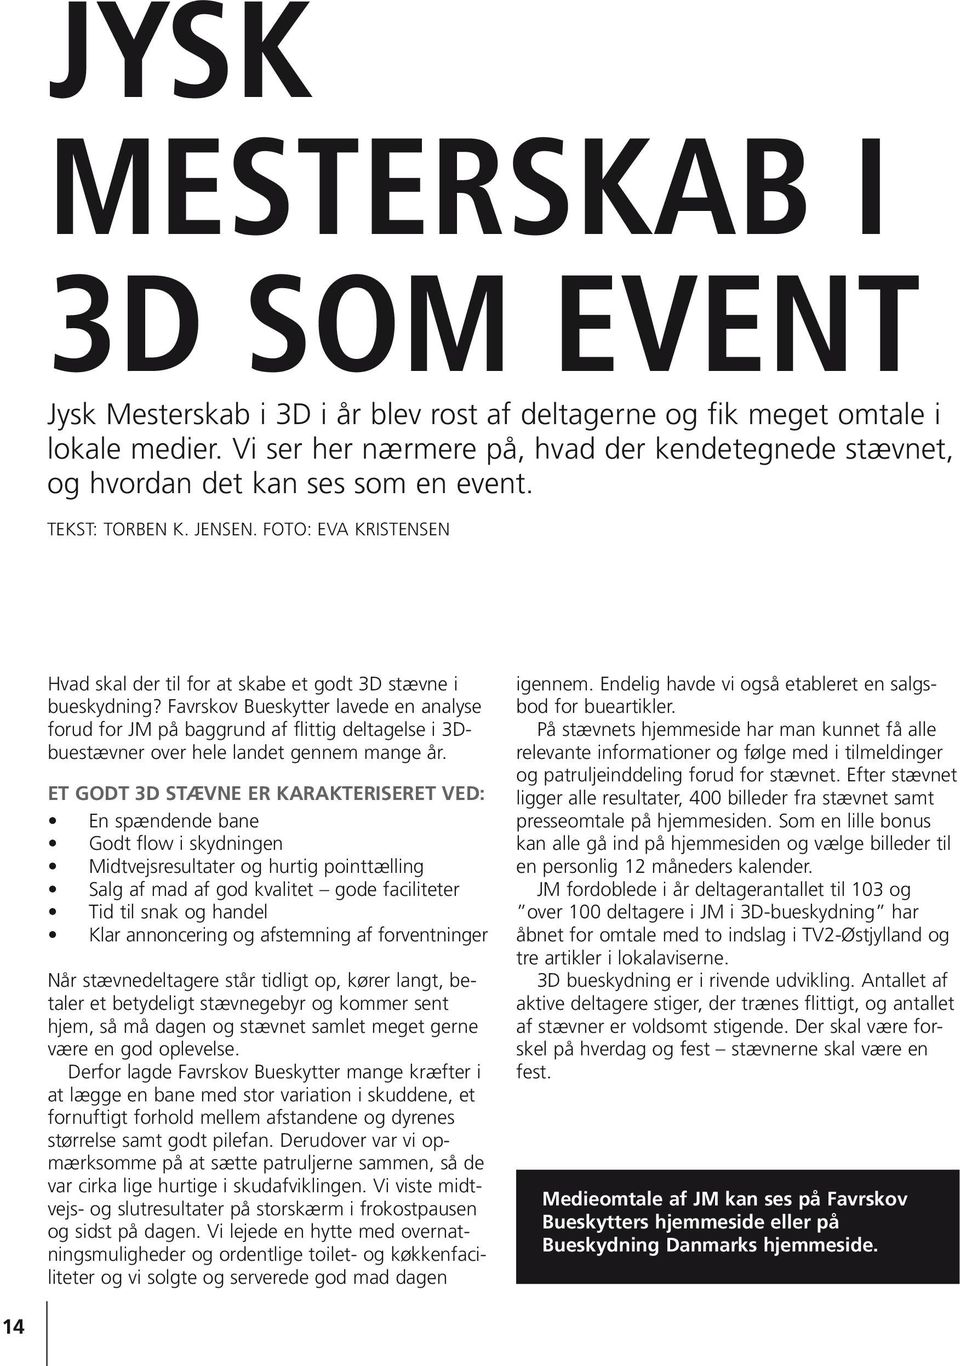 Favrskov Bueskytter lavede en analyse forud for JM på baggrund af flittig deltagelse i 3Dbuestævner over hele landet gennem mange år.